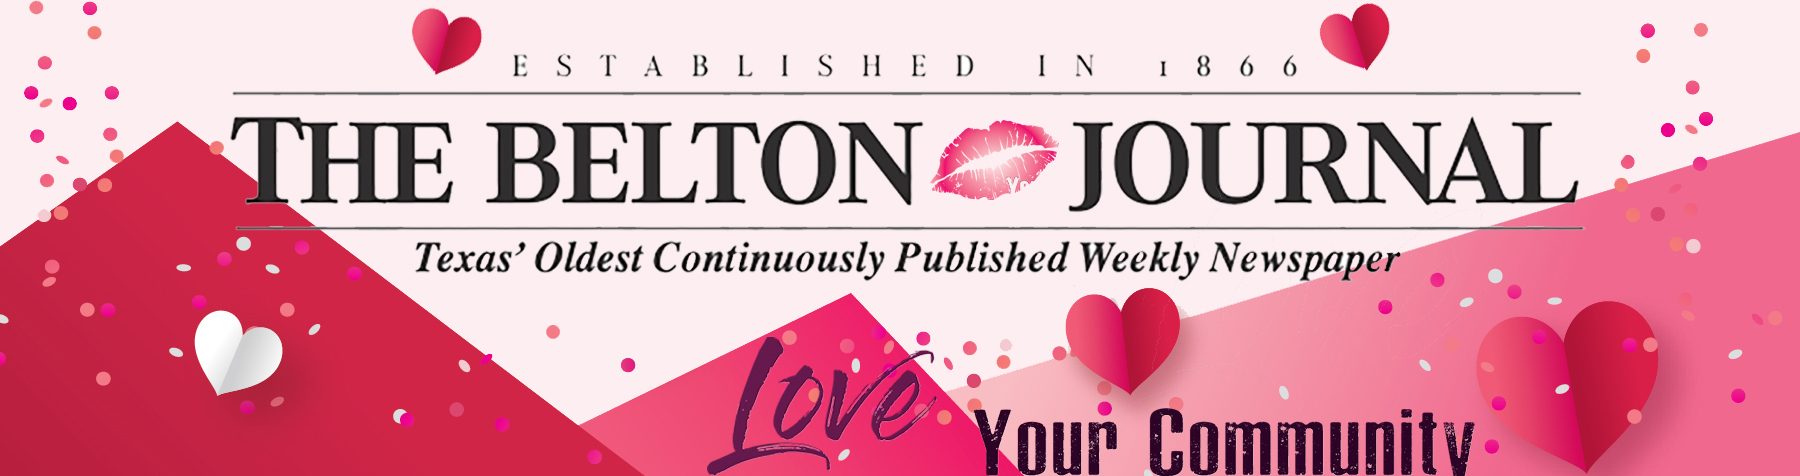 Belton Journal Valentine's Day Banner Image